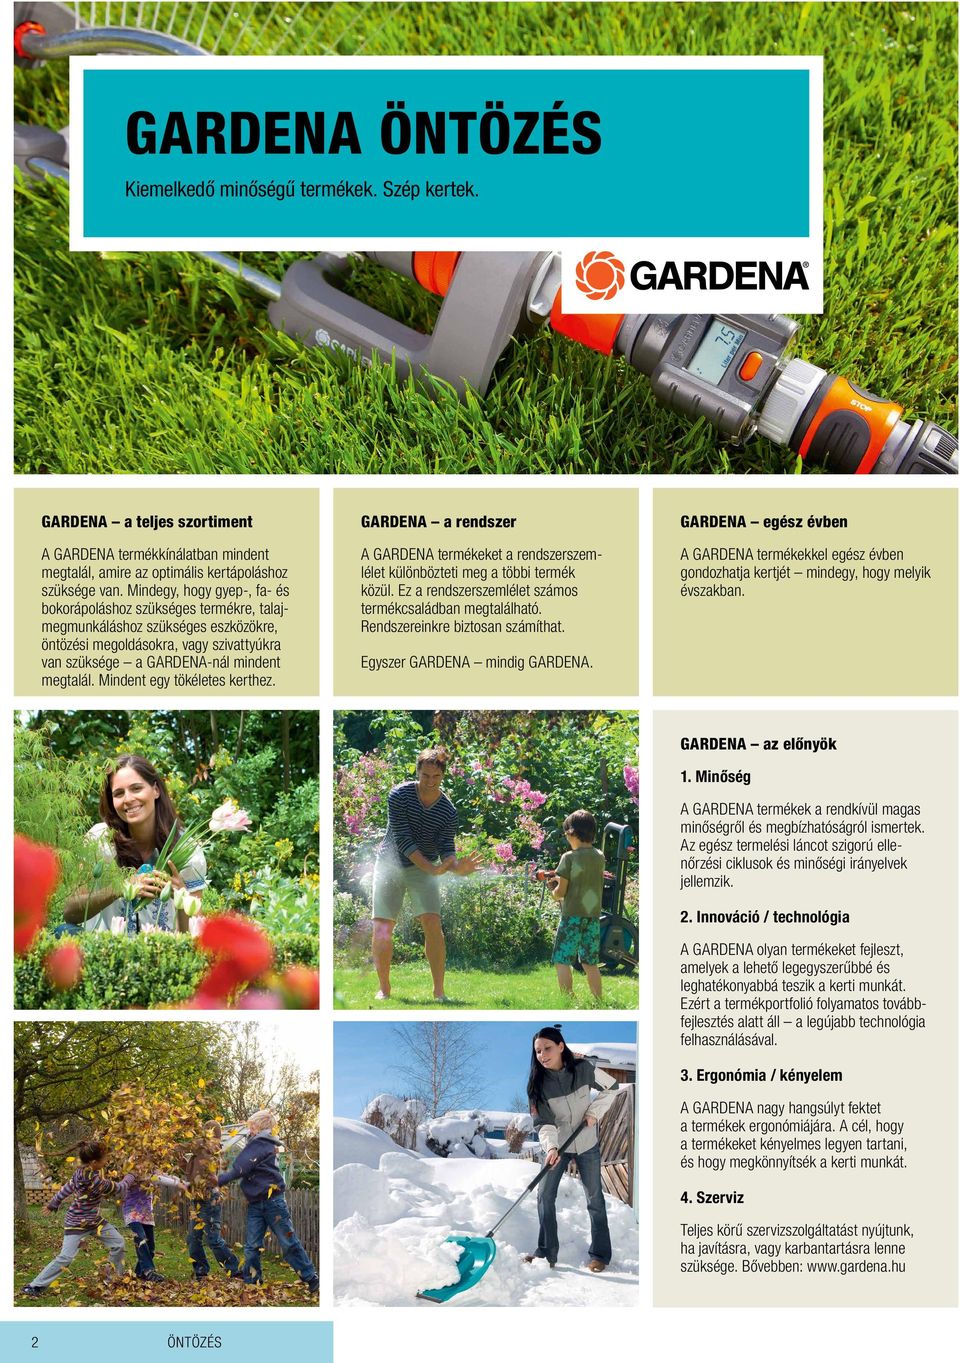 Mindent egy tökéletes kerthez. GARDENA a rendszer A GARDENA termékeket a rendszerszemlélet különbözteti meg a többi termék közül. Ez a rendszerszemlélet számos termékcsaládban megtalálható.